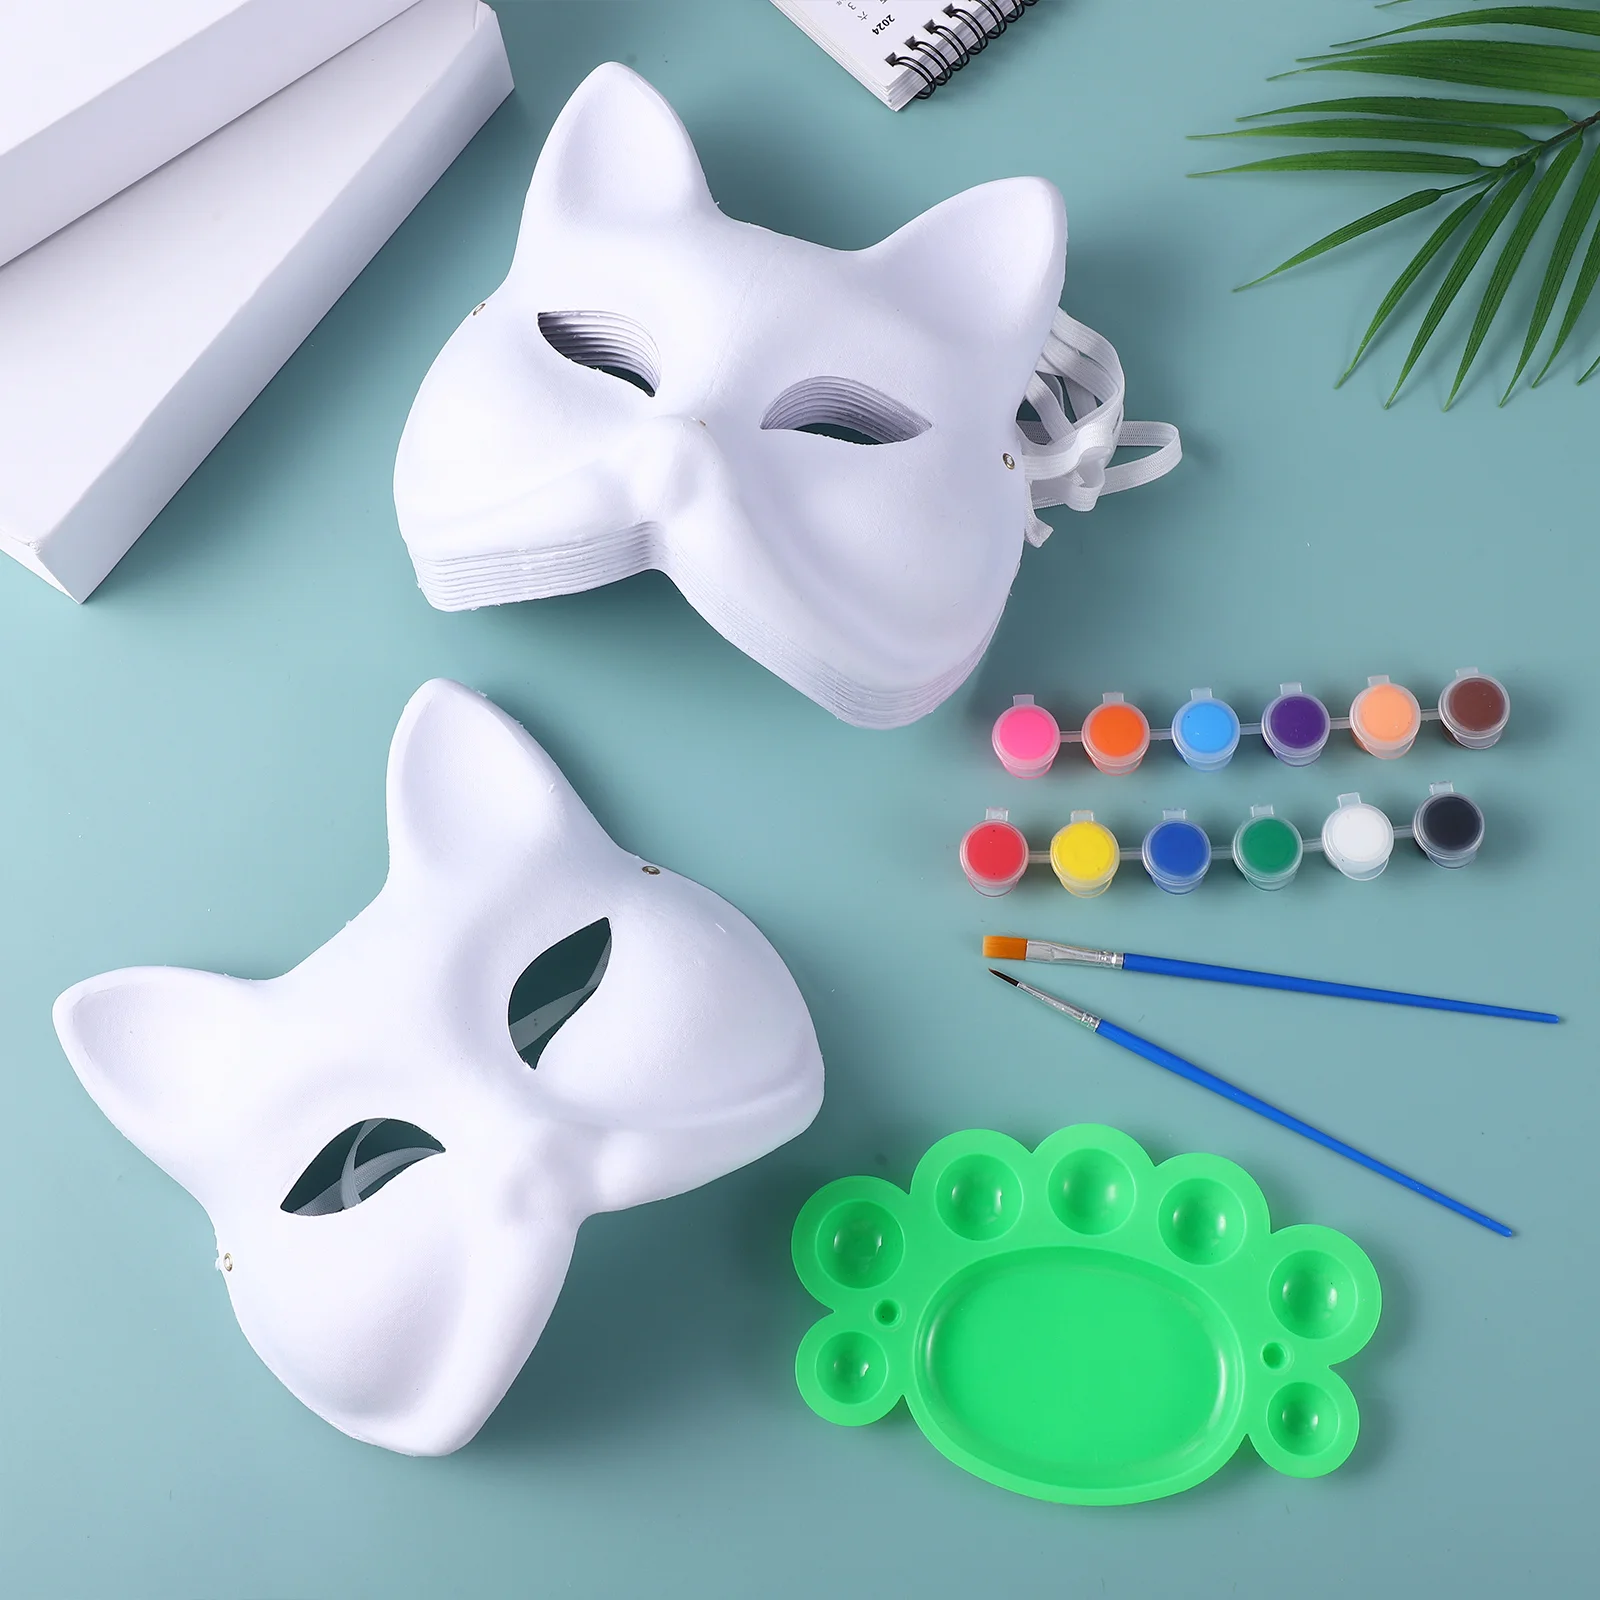 1 Conjunto de Diy Fox Máscaras Festa de Máscaras de Papel em Branco, a Polpa de Máscaras de Cosplay de Artesanato Máscaras para Decorar com Tintas Imagem 5